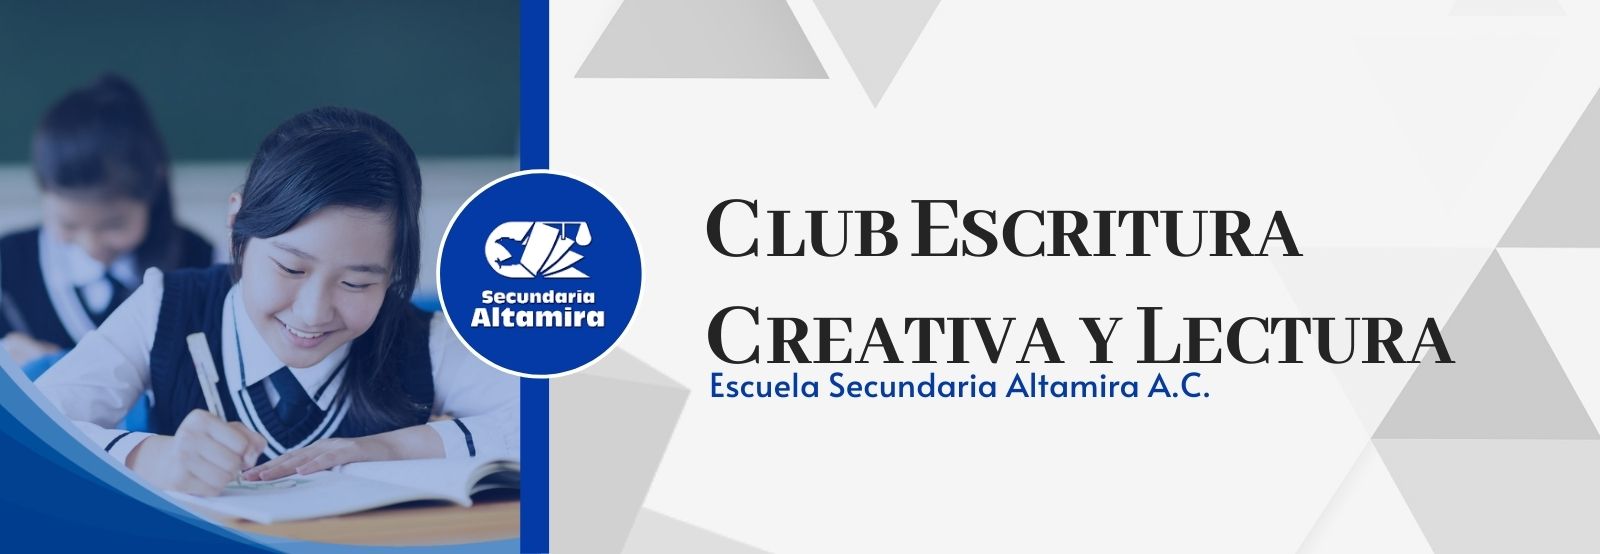 Club Escritura Creativa y Lectura